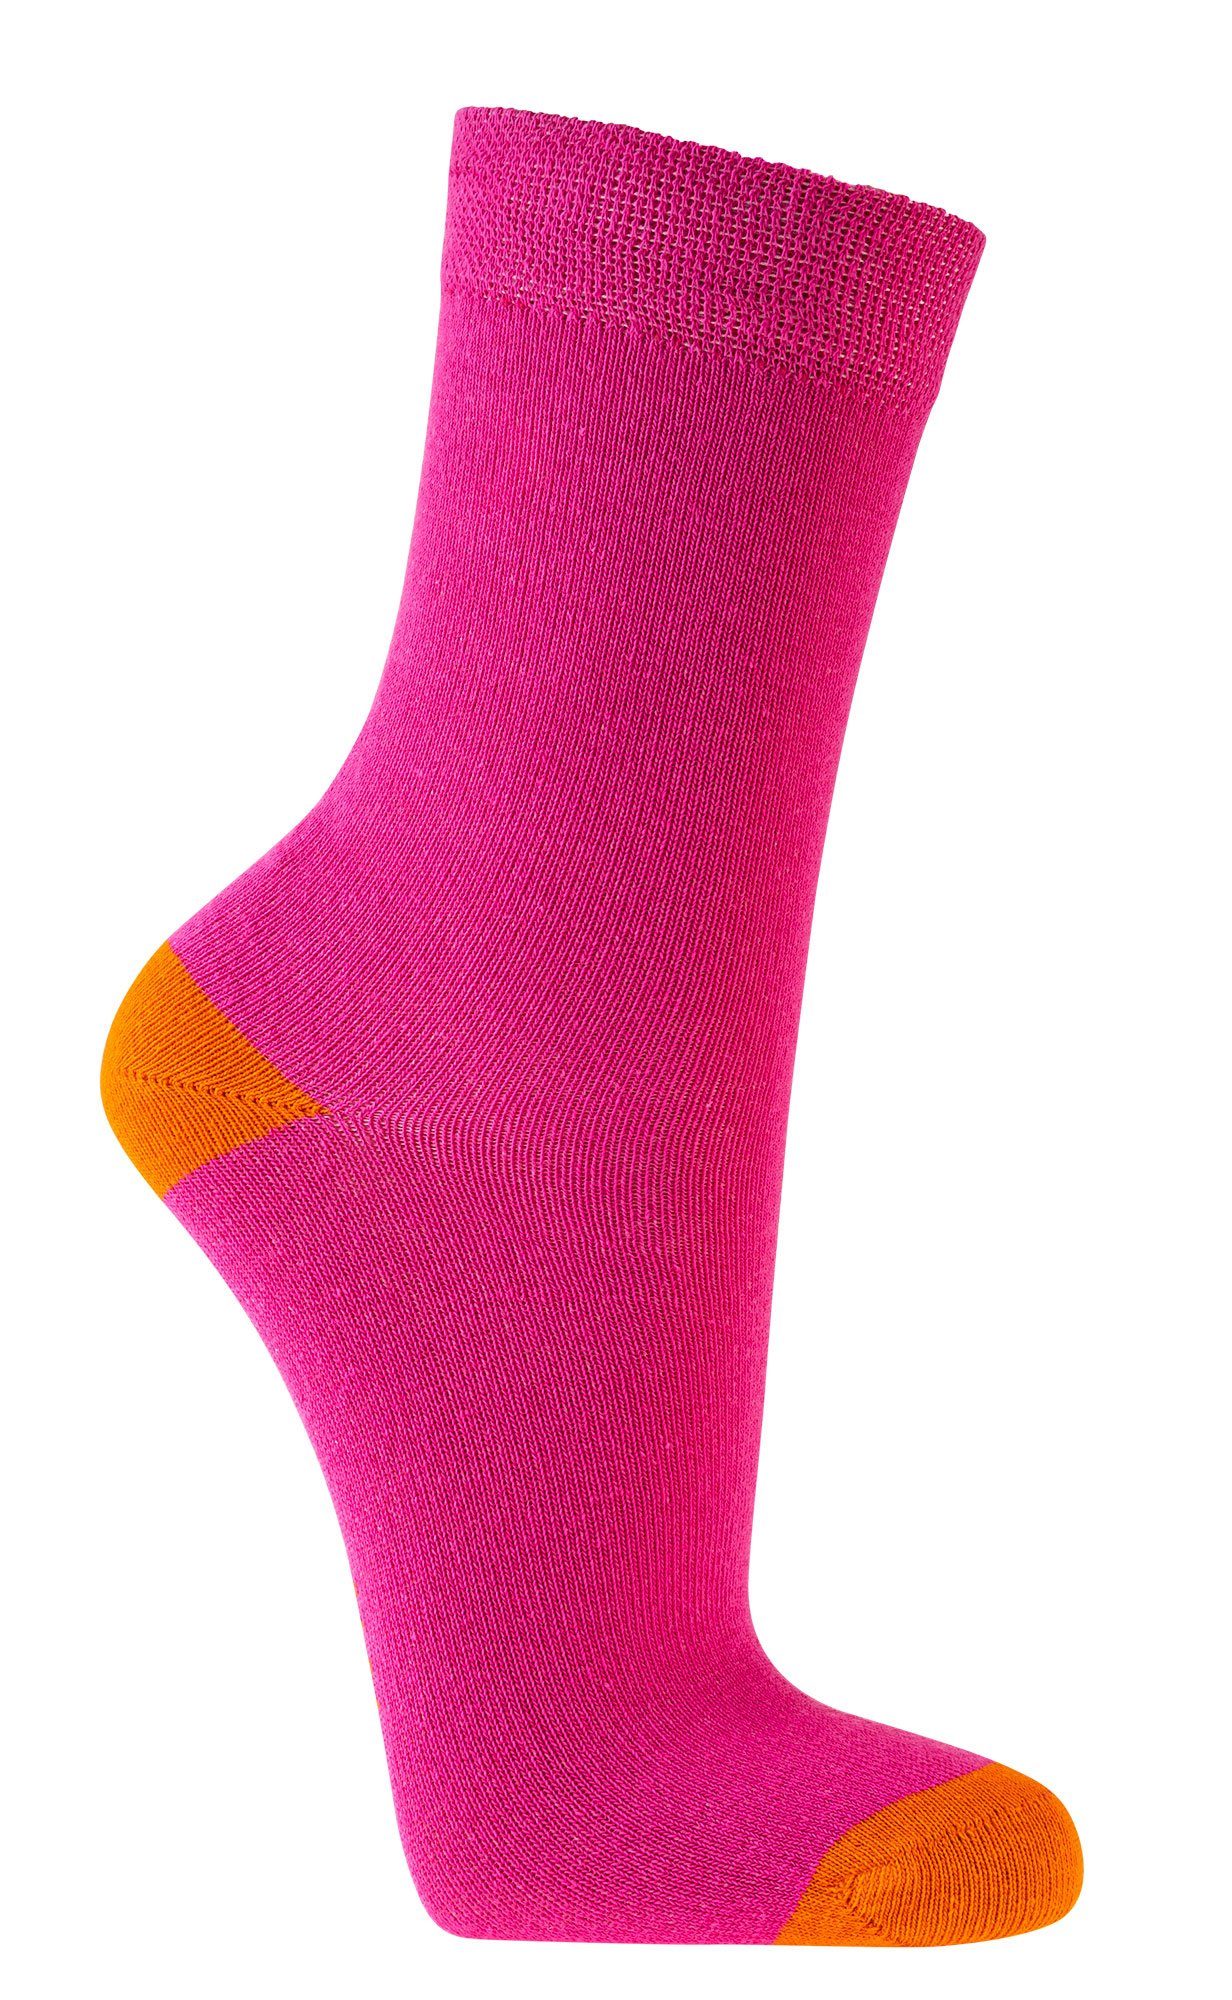 FussFreunde Socken 6 Paar Kinder Socken für Mädchen & Jungen, GUTE LAUNE FARBEN Pink